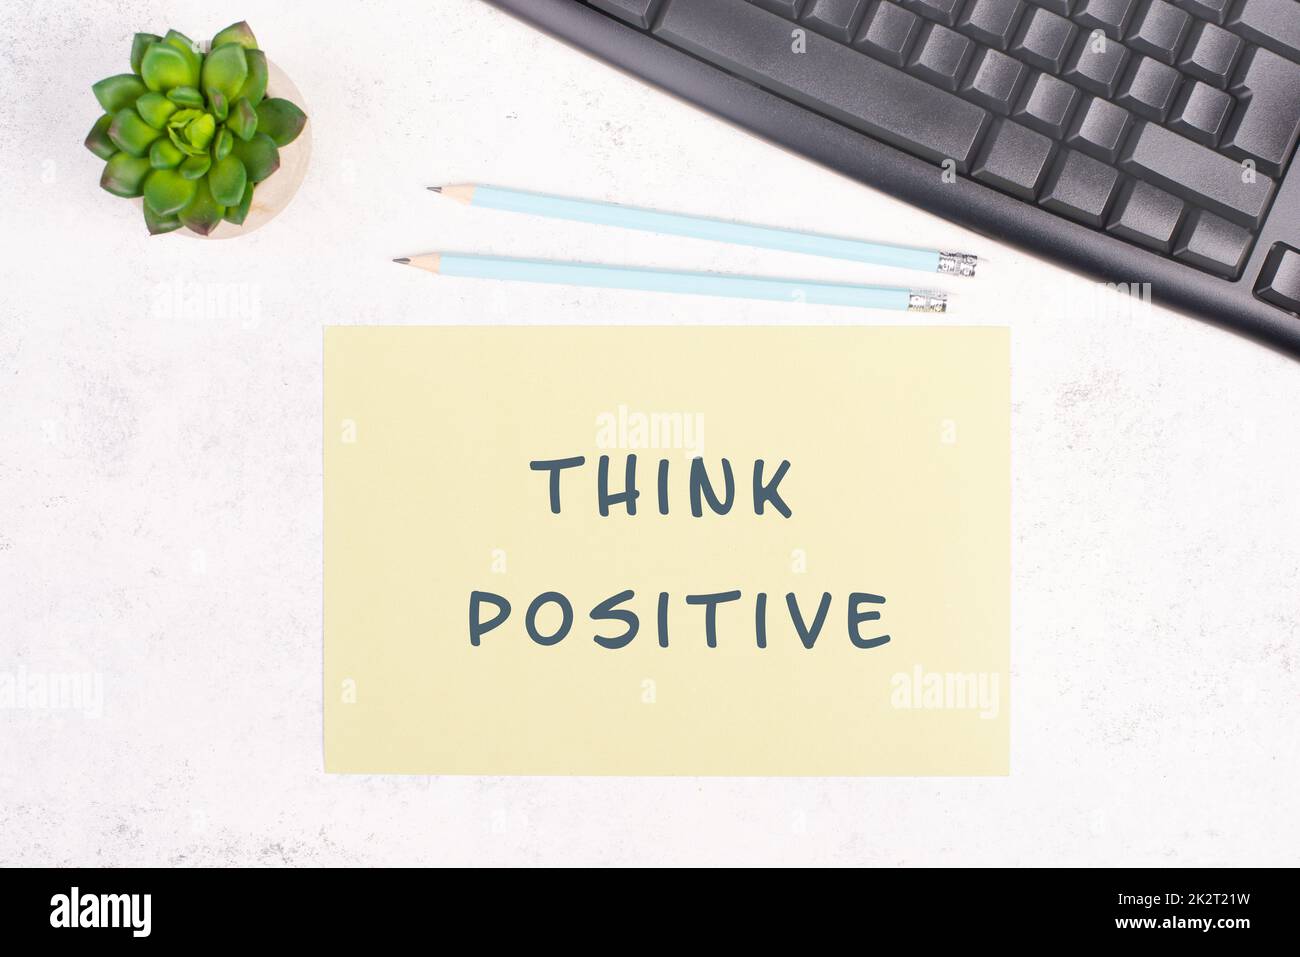 Think positive steht auf einem Papier, einer Computertastatur und einem Kaktus, Brainstorming für neue Ideen, neue Denkansätze, Schreibtisch im Home Office Stockfoto